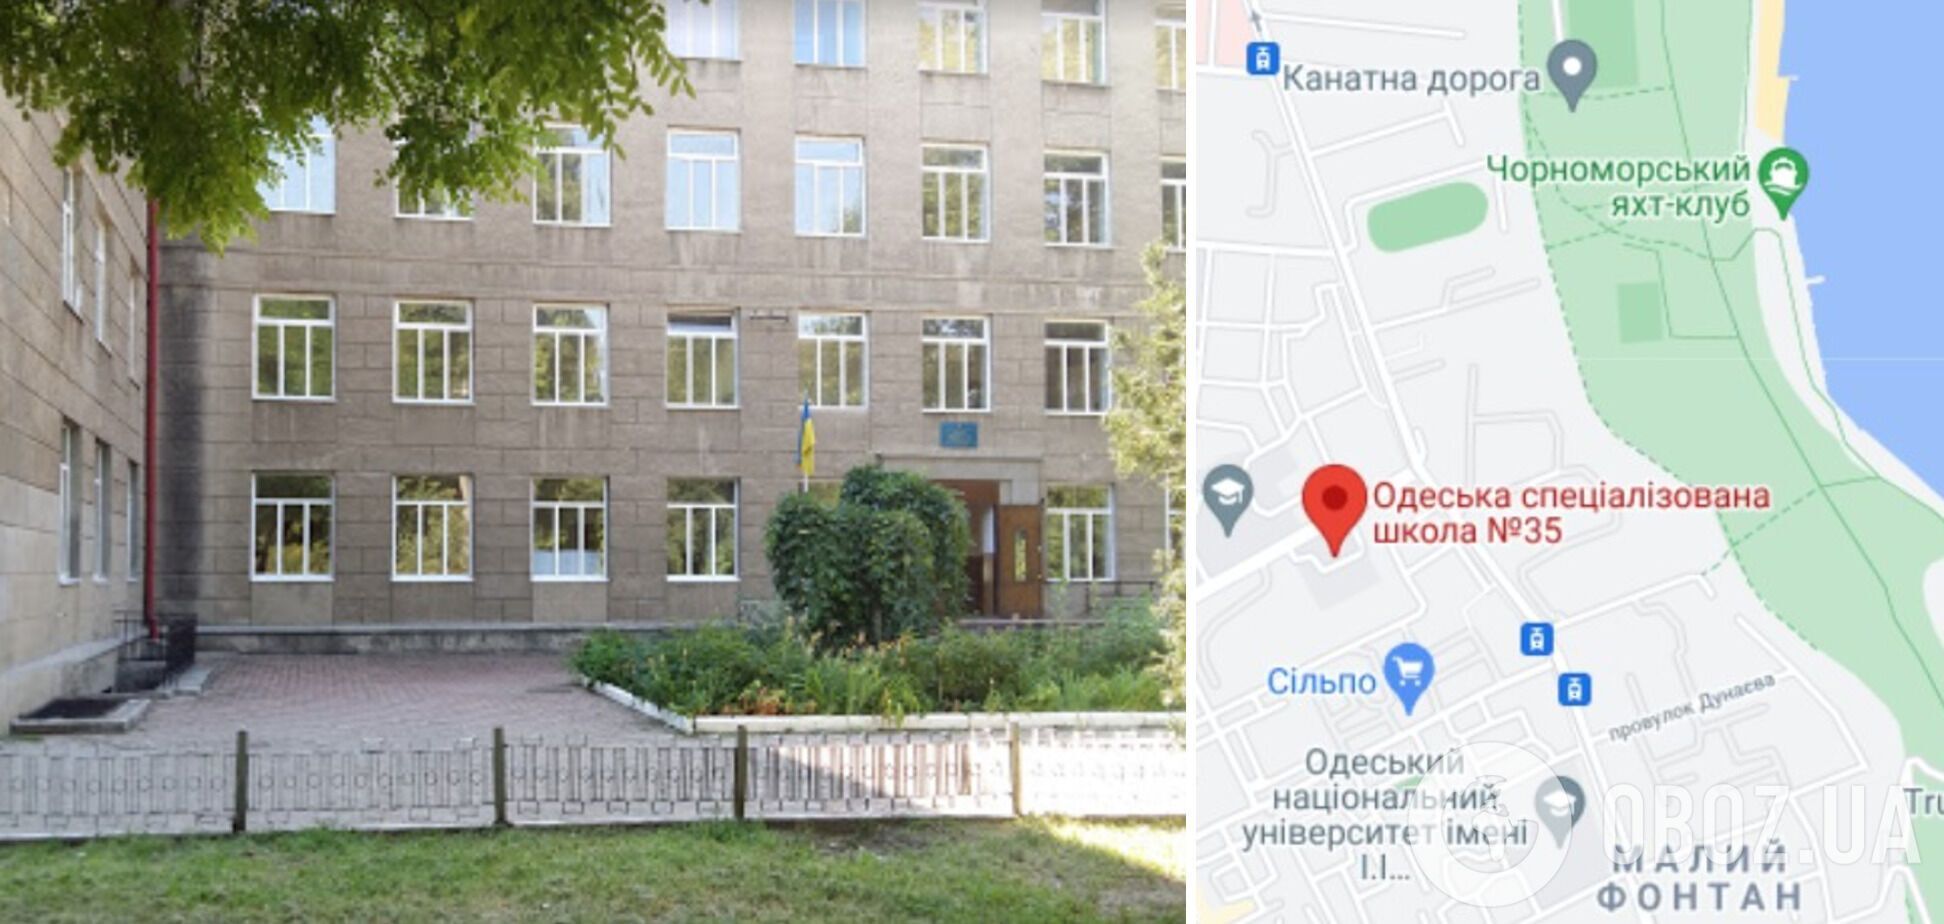 Інцидент трапився в Одеській спеціалізованій школі №35